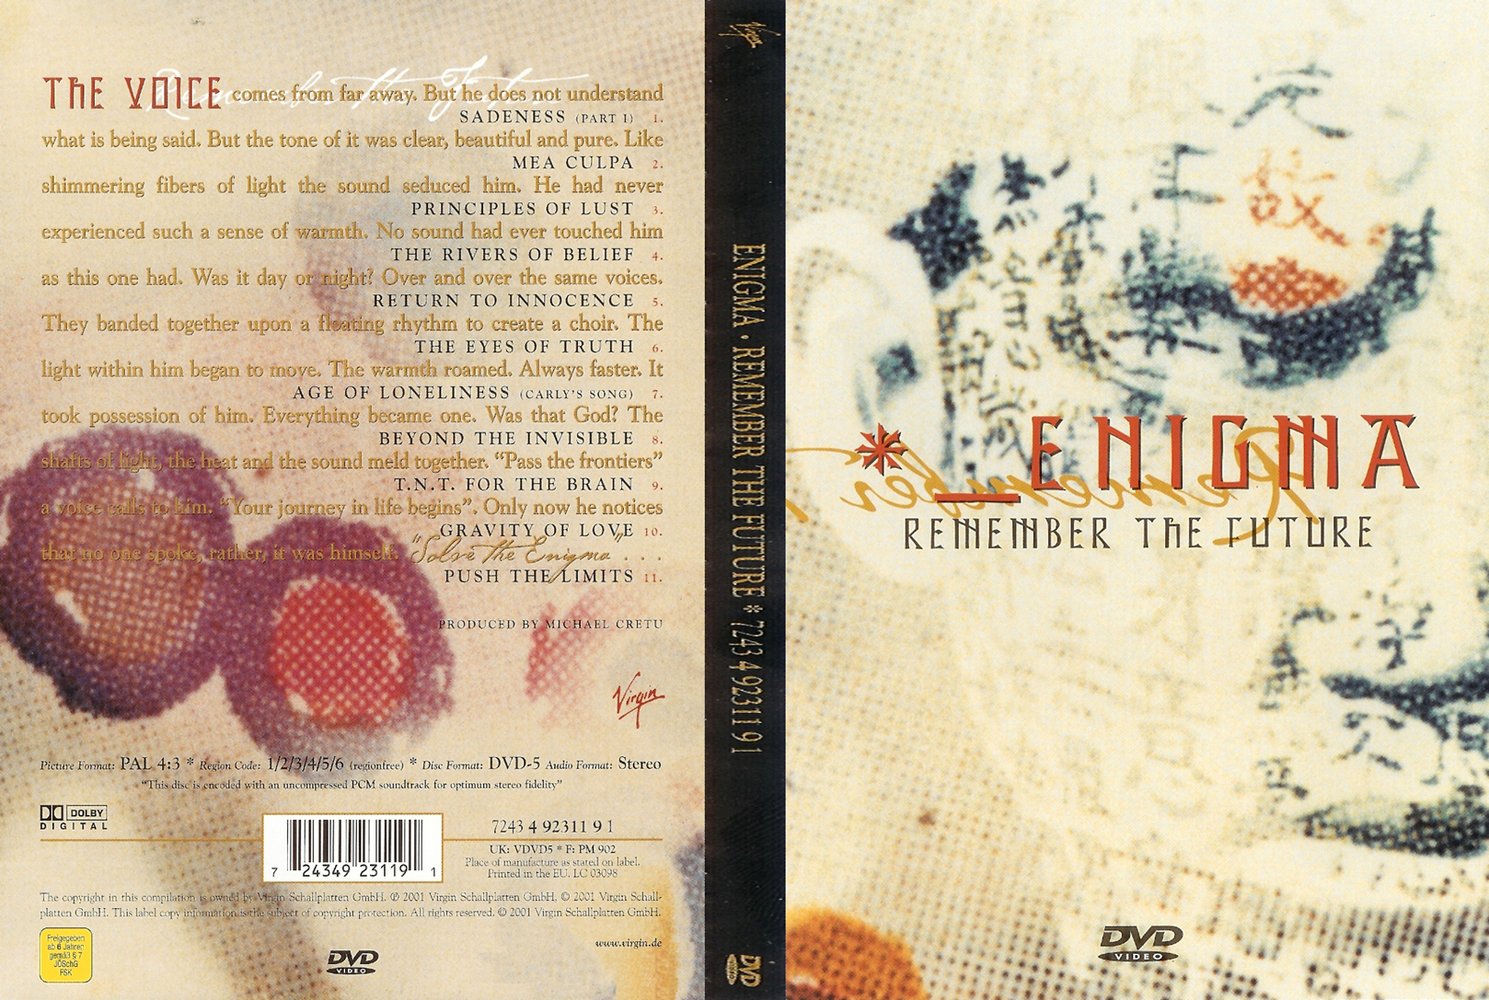 Jaquette DVD Enigma remember the future